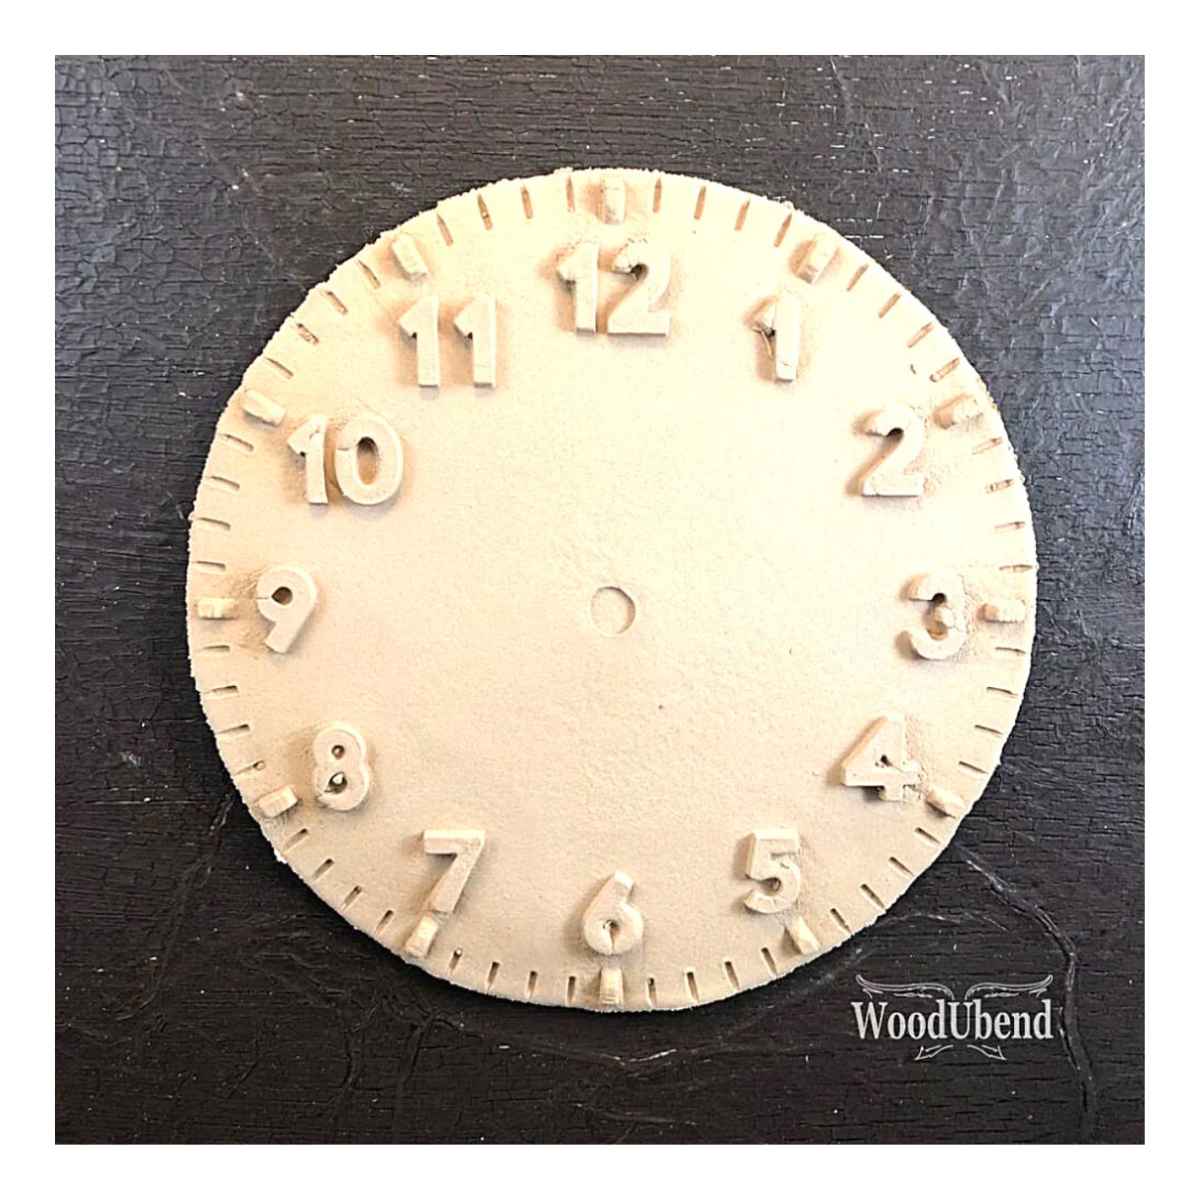 WoodUbend - English Numeral Round Clock 17cm